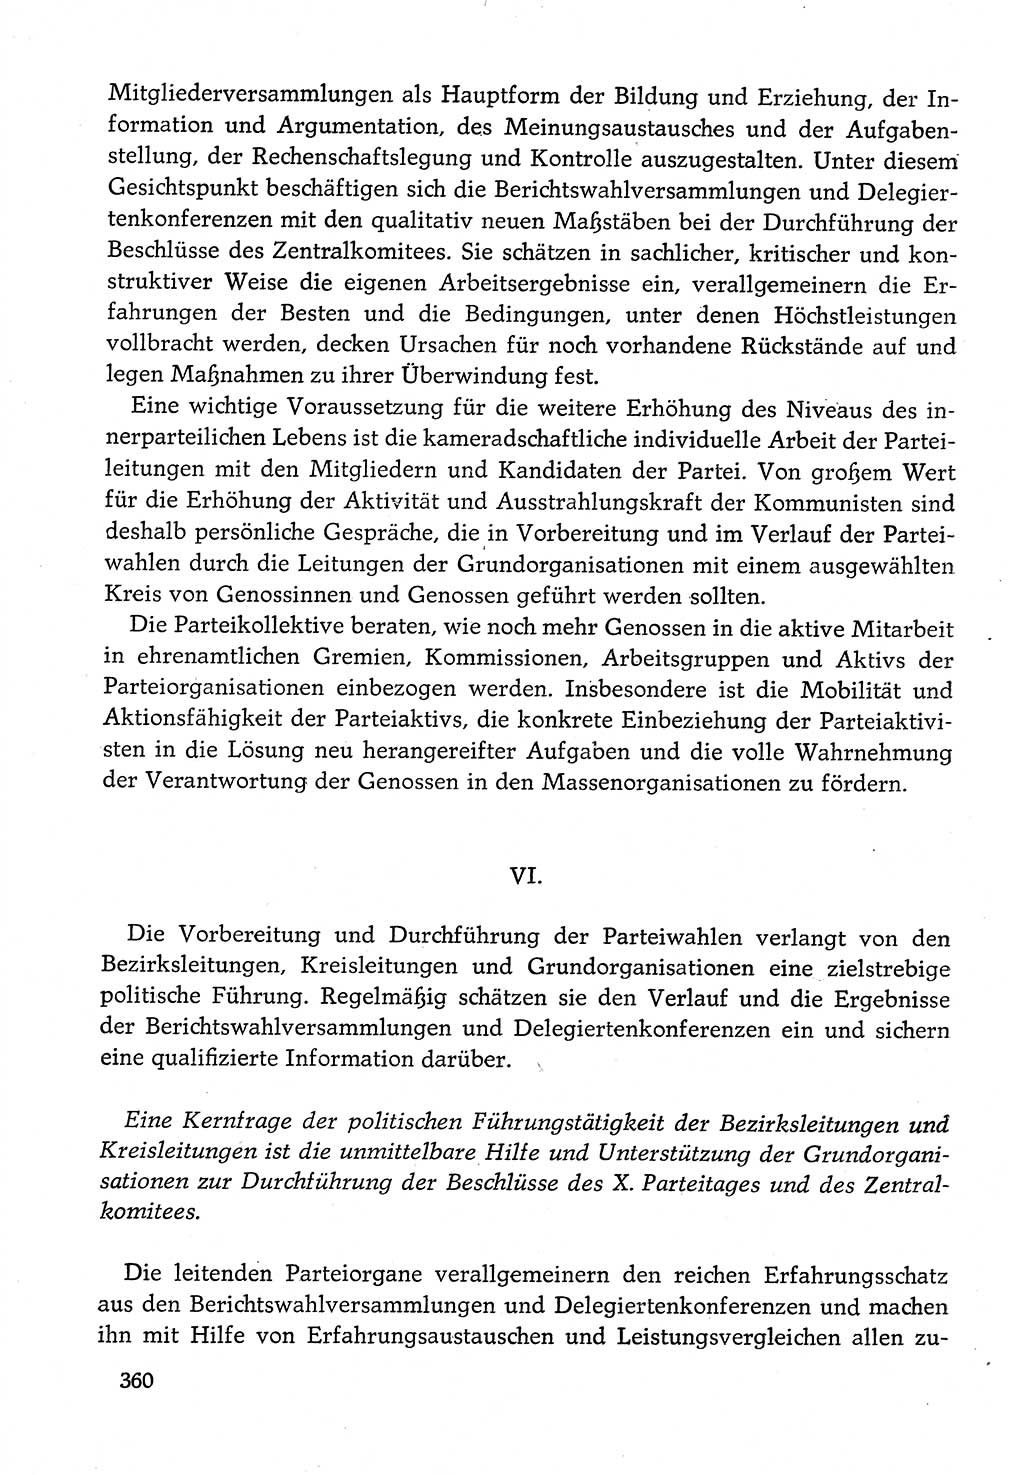 Dokumente der Sozialistischen Einheitspartei Deutschlands (SED) [Deutsche Demokratische Republik (DDR)] 1982-1983, Seite 360 (Dok. SED DDR 1982-1983, S. 360)